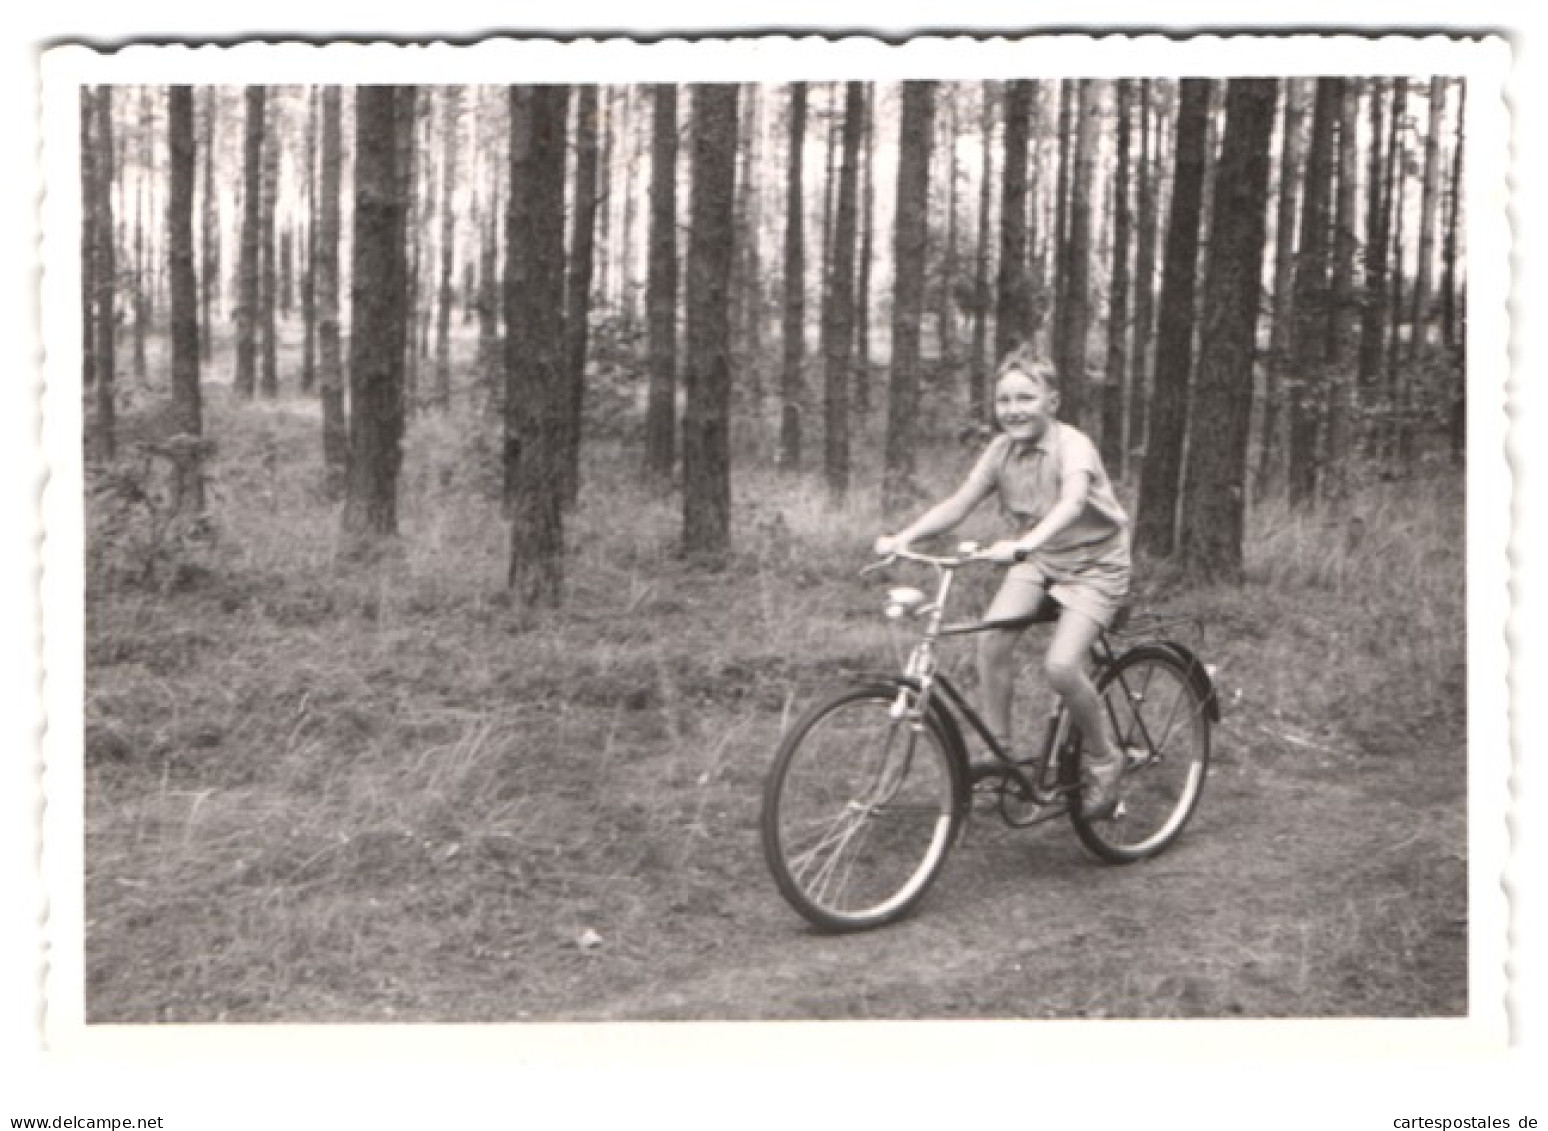 3 Fotografien Knaben Mit Fahrrad, Velo, Bike, Wald Im Berliner Umland 1962-1963  - Radsport